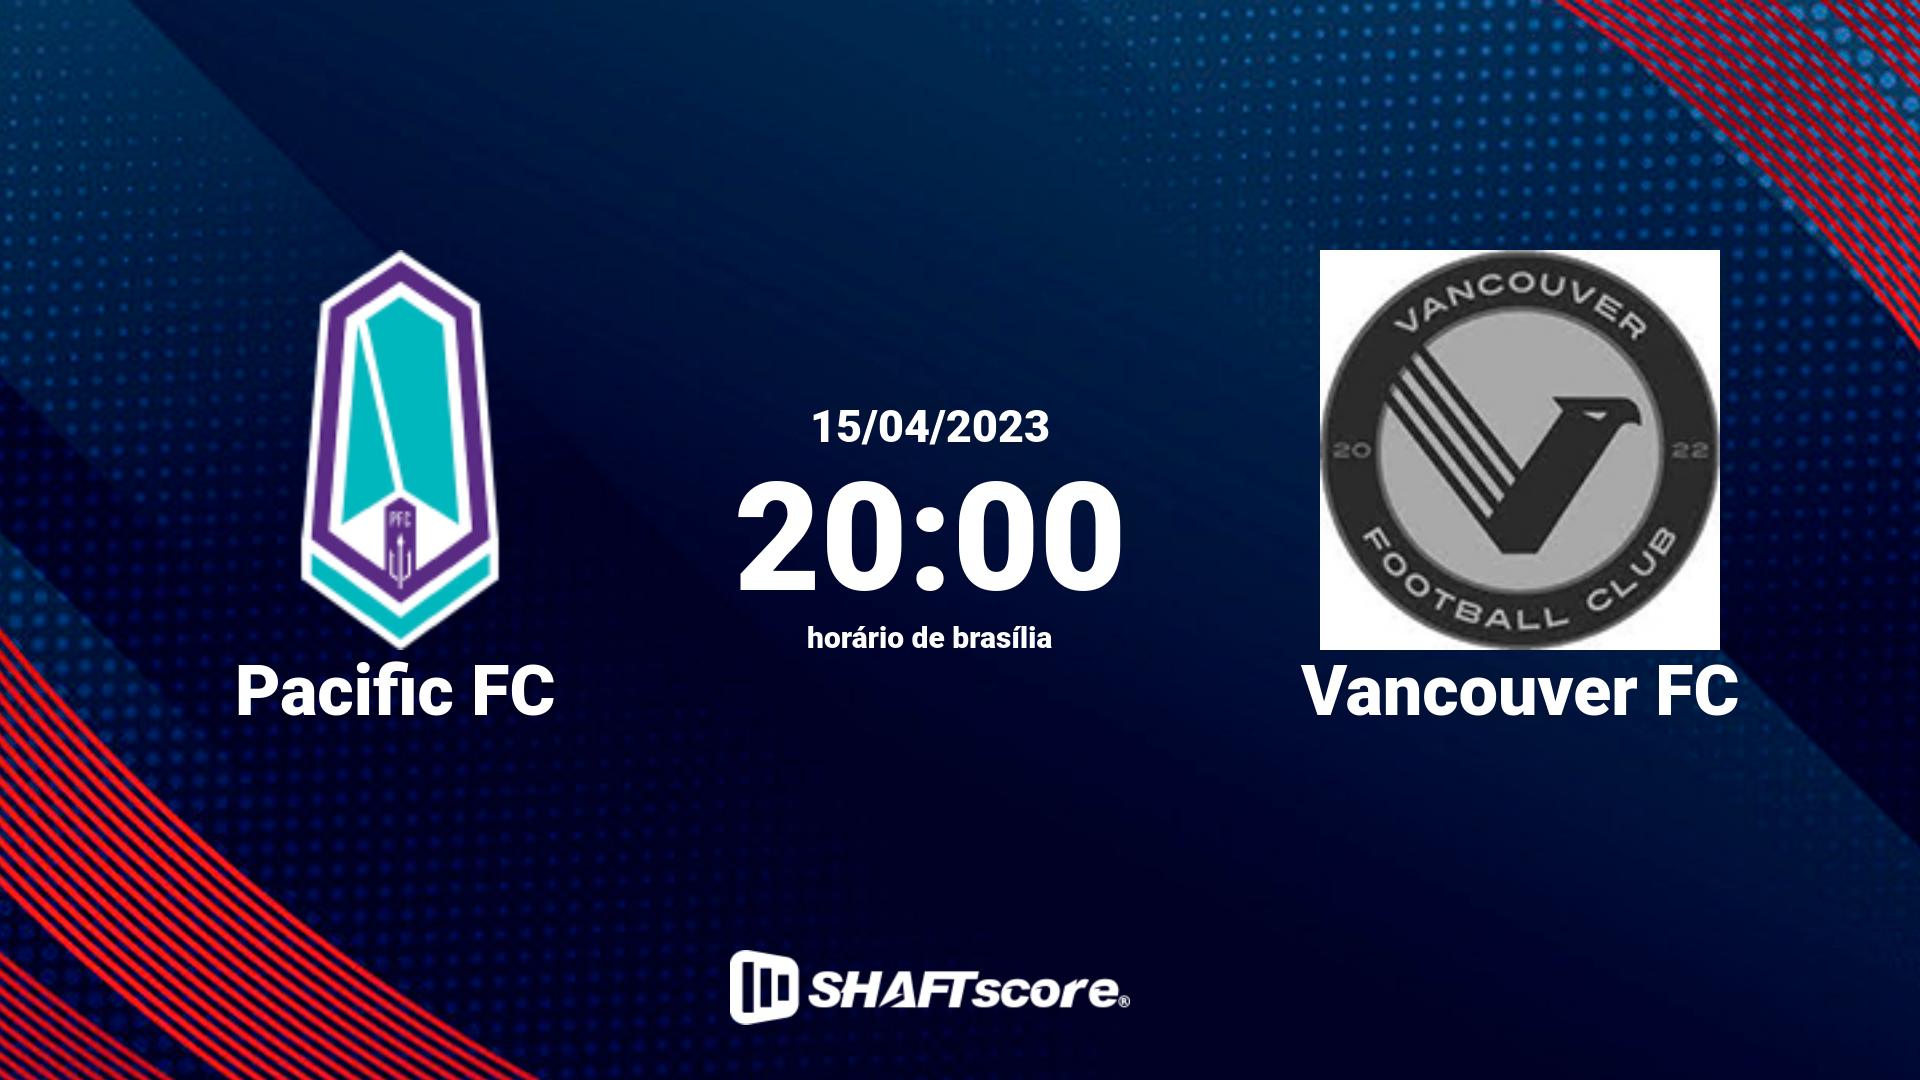 Estatísticas do jogo Pacific FC vs Vancouver FC 15.04 20:00